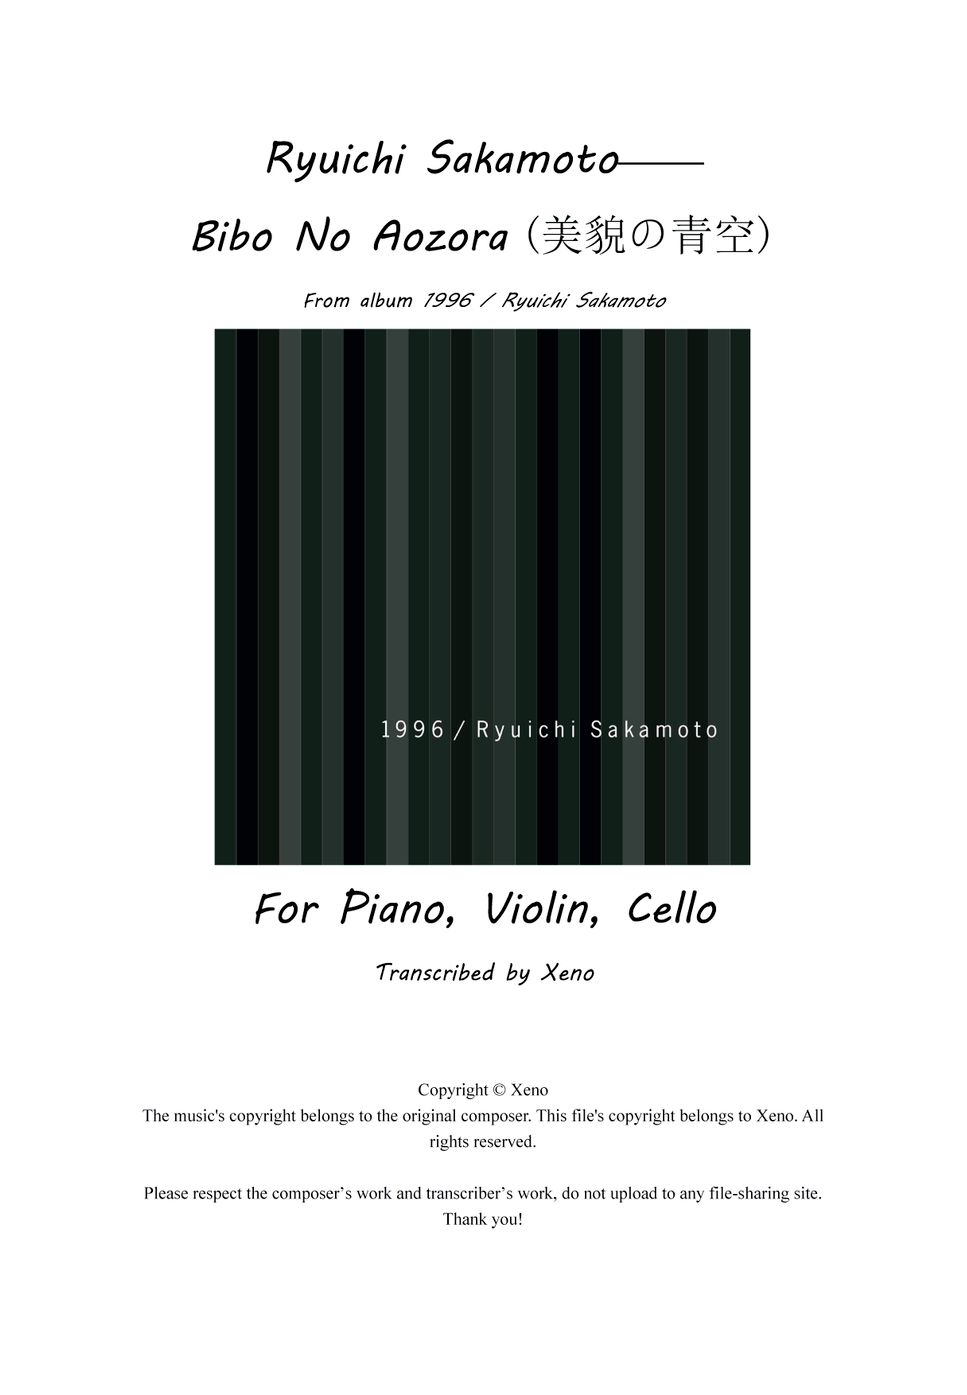 Ryuichi Sakamoto - Bibo No Aozora (Score and Parts) (Edited and corrected  from scores presented along with the Ryuichi Samamoto's album 